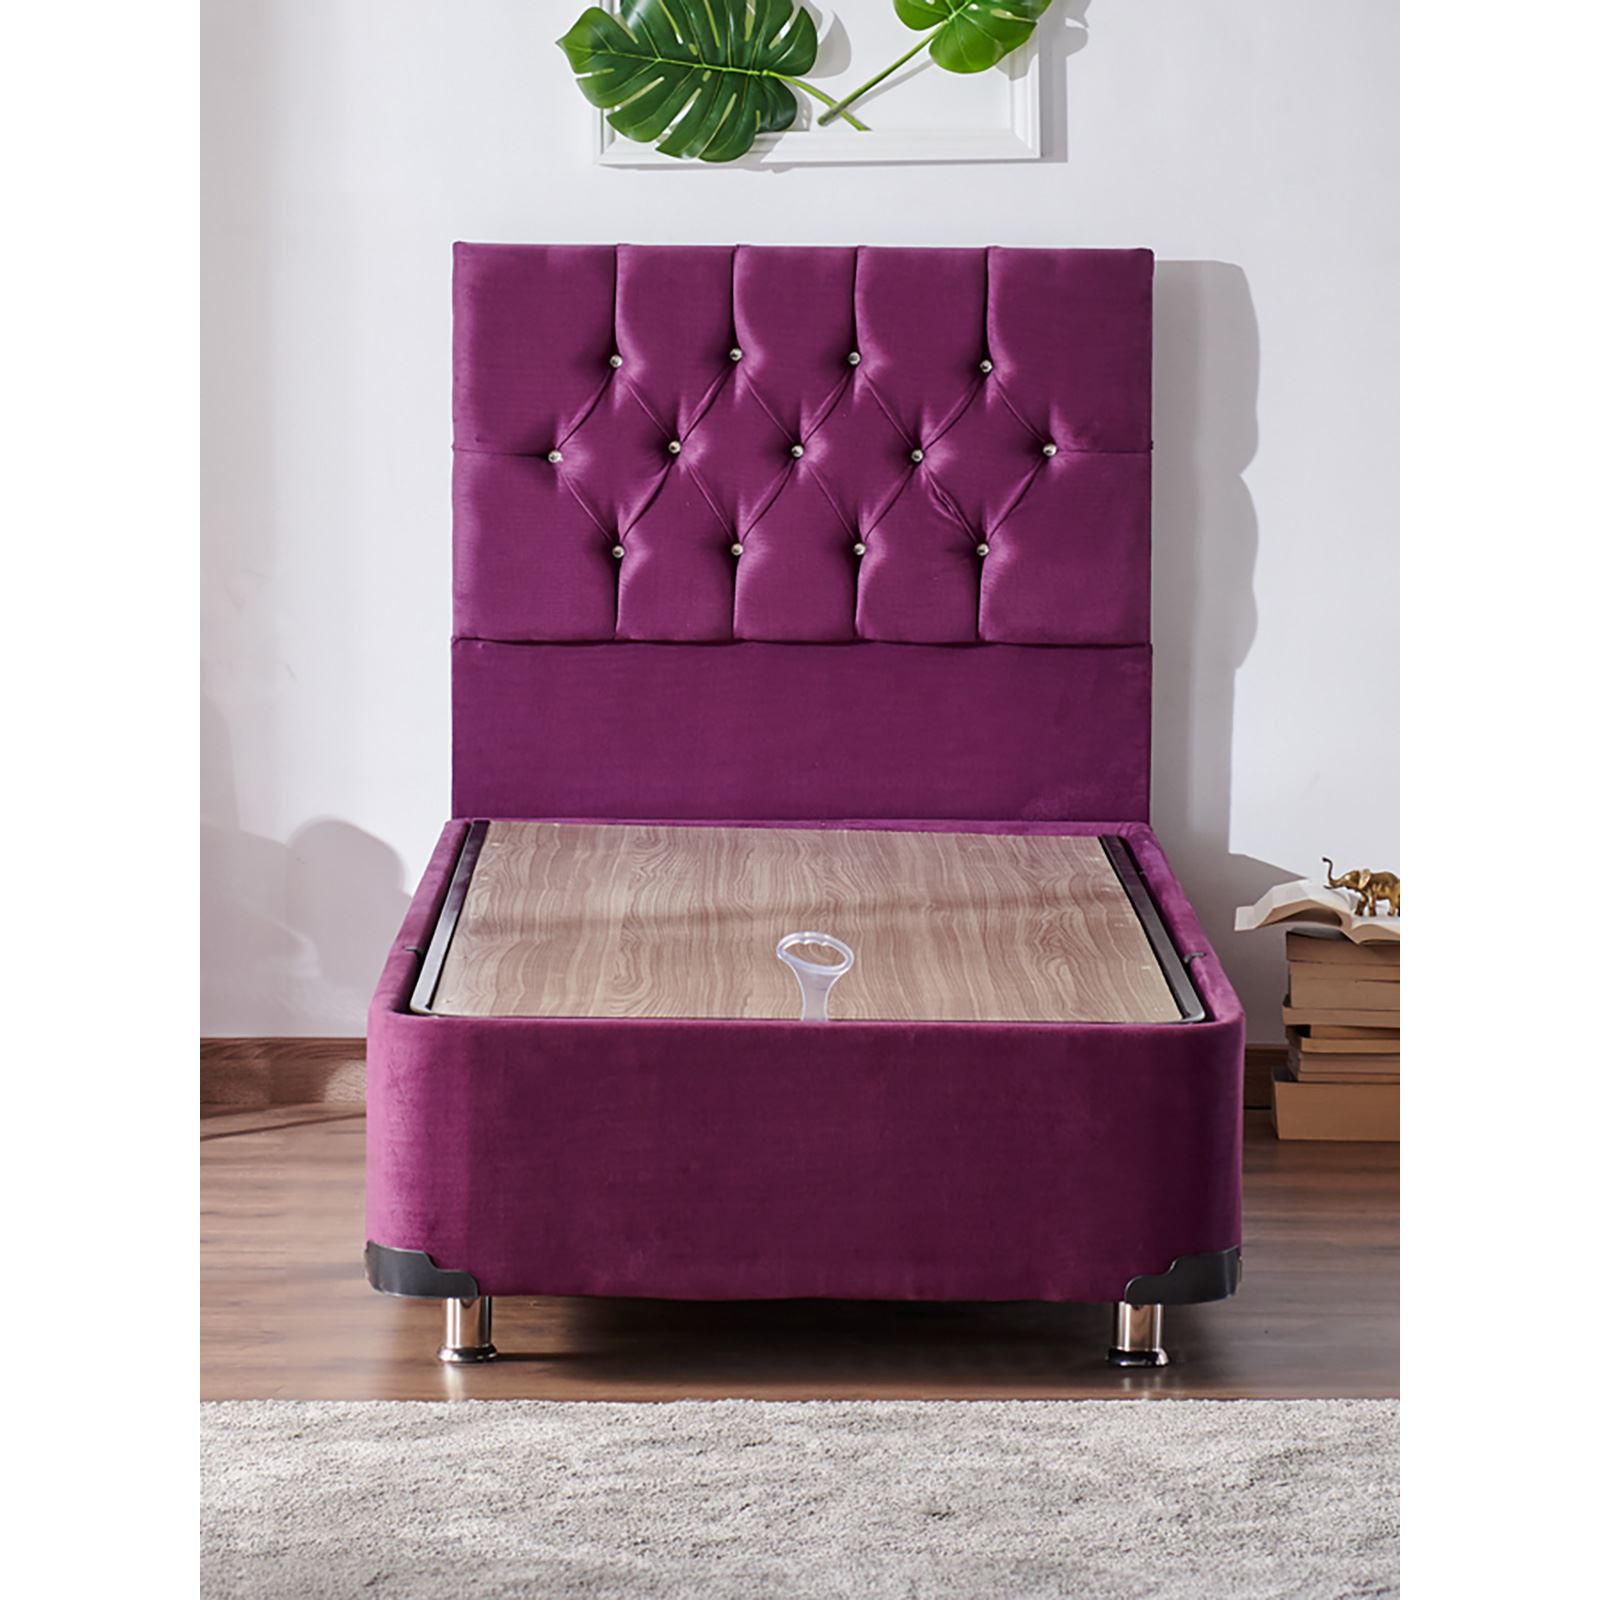 Niron Violet Yatak Seti 90x190 cm Tek Kişilik Yatak Baza Başlık Takımı Orta Sert Yatak Baza ve Başlığı Mor